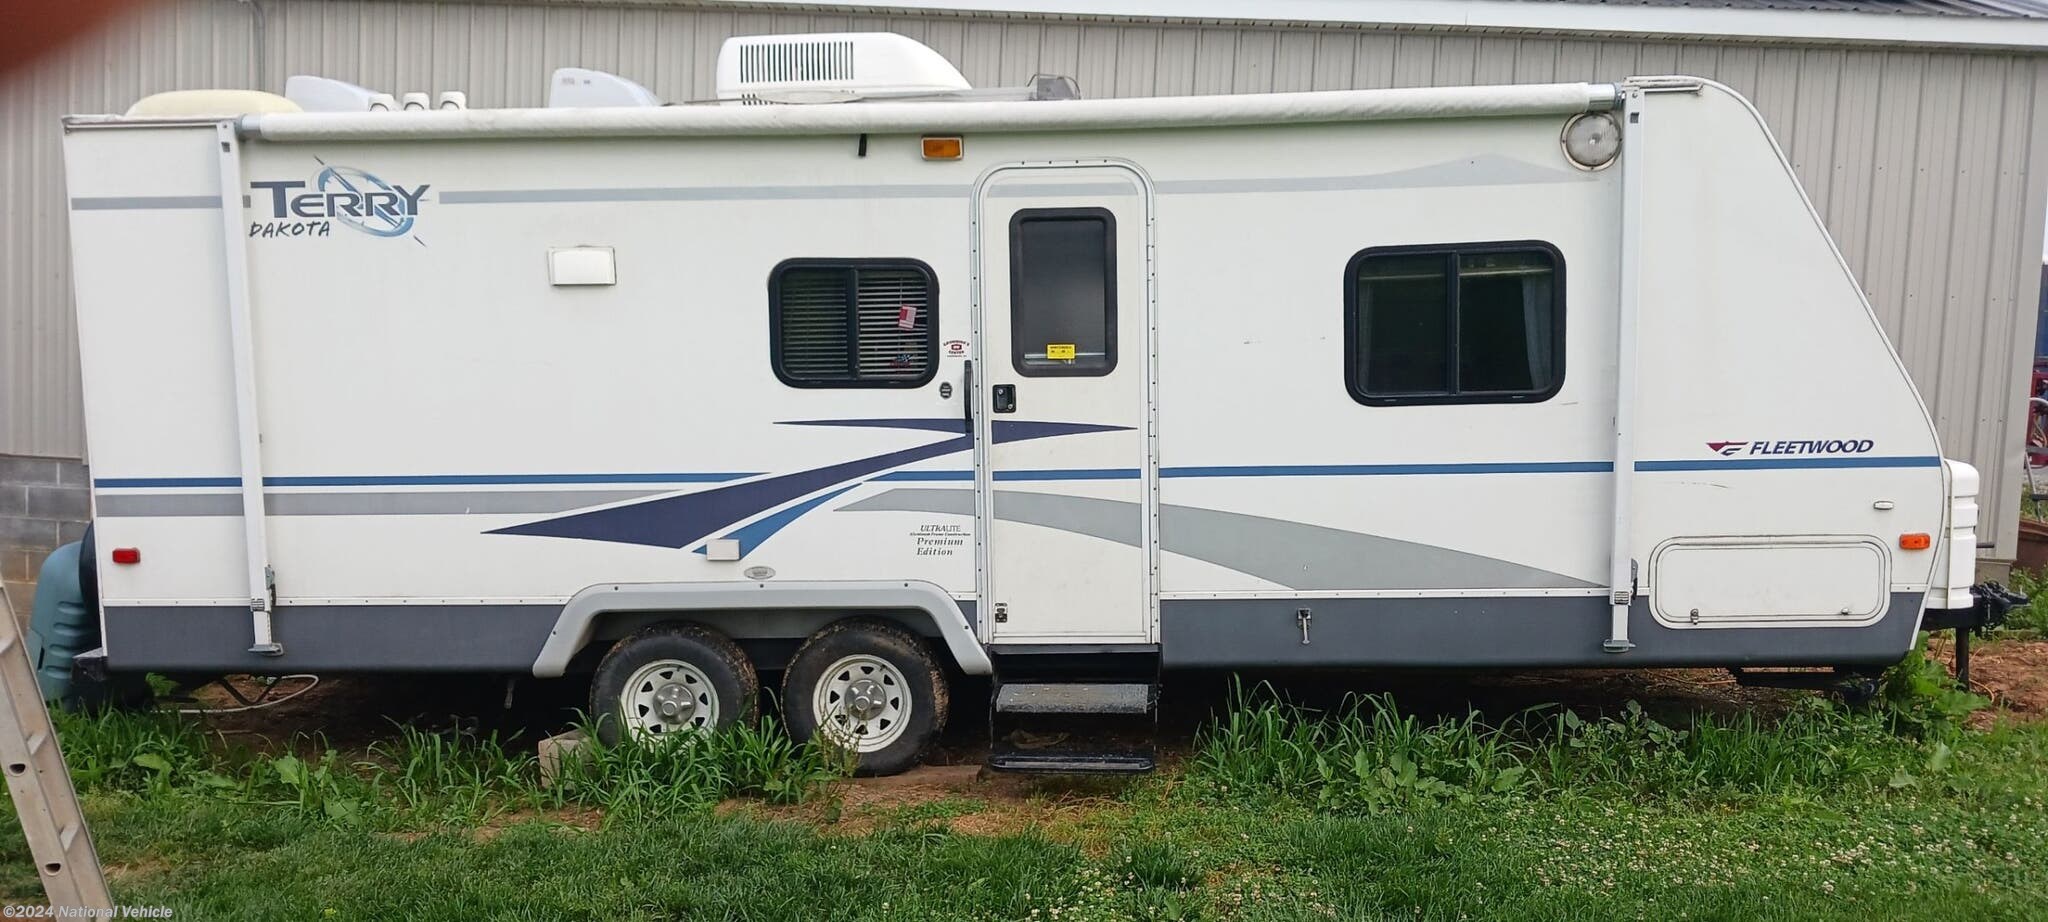 fleetwood terry dakota travel trailer